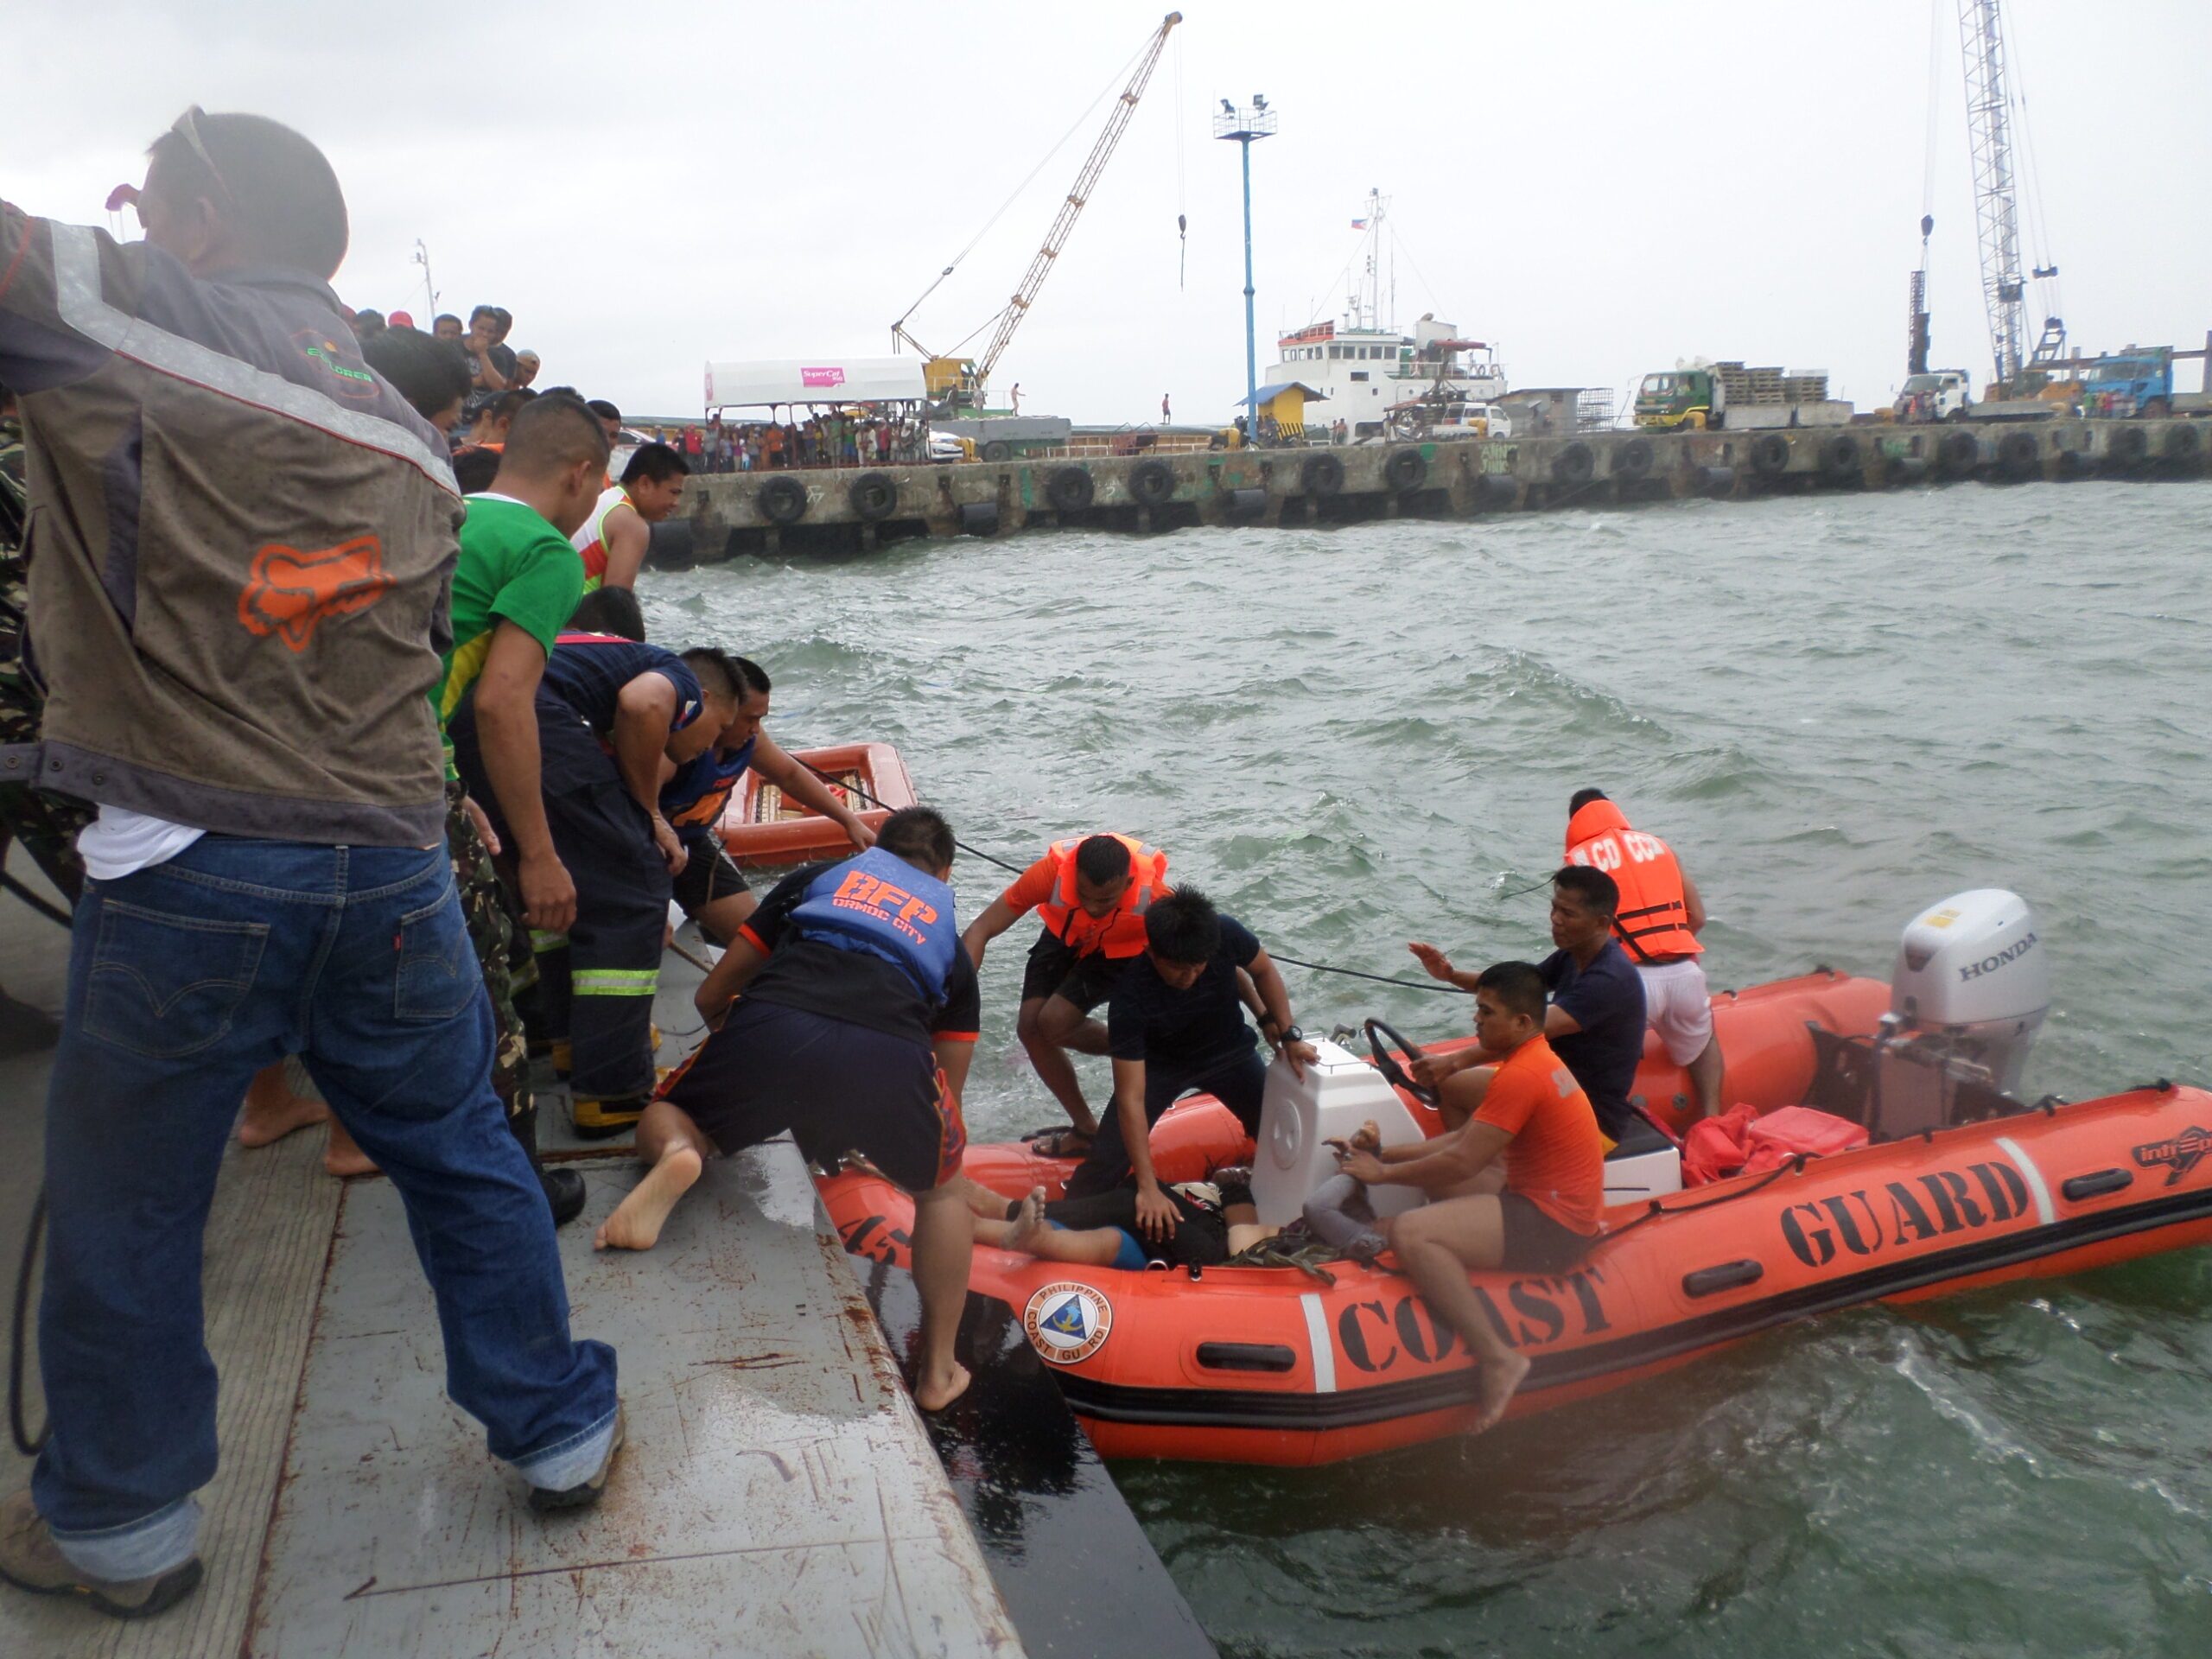 Ormoc ferry survivor: ‘I assumed I would die’